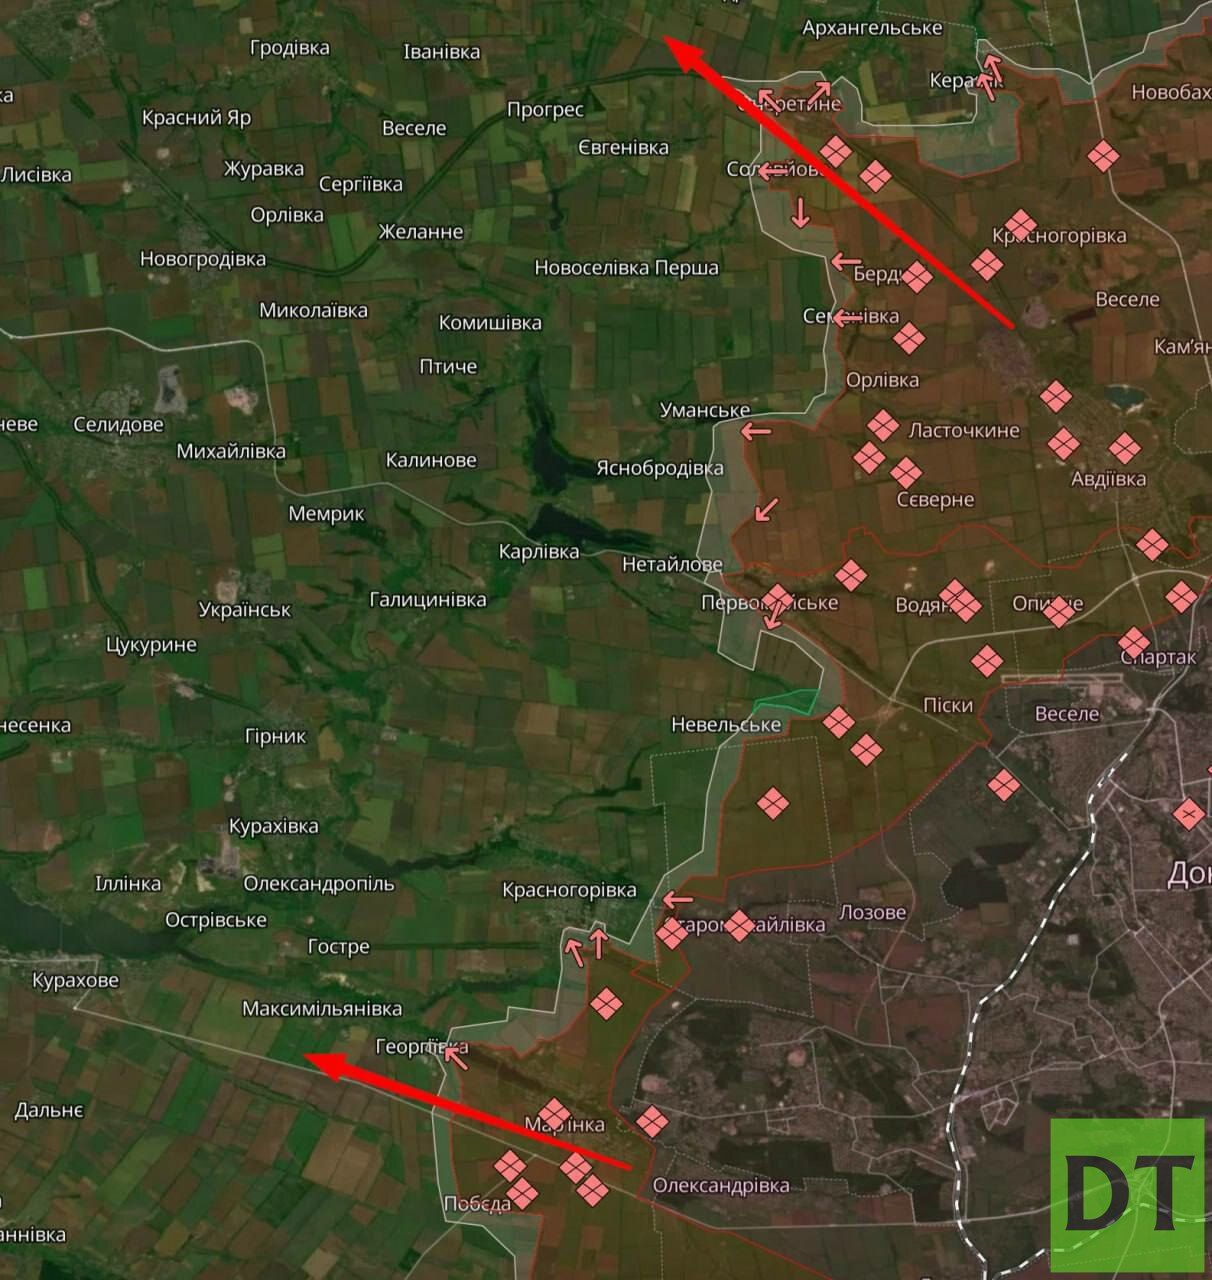 Карта боевых действий и сводки с фронта, авдеевский участок, к утру 29.04.24 г. от "Донбасс Сегодня"